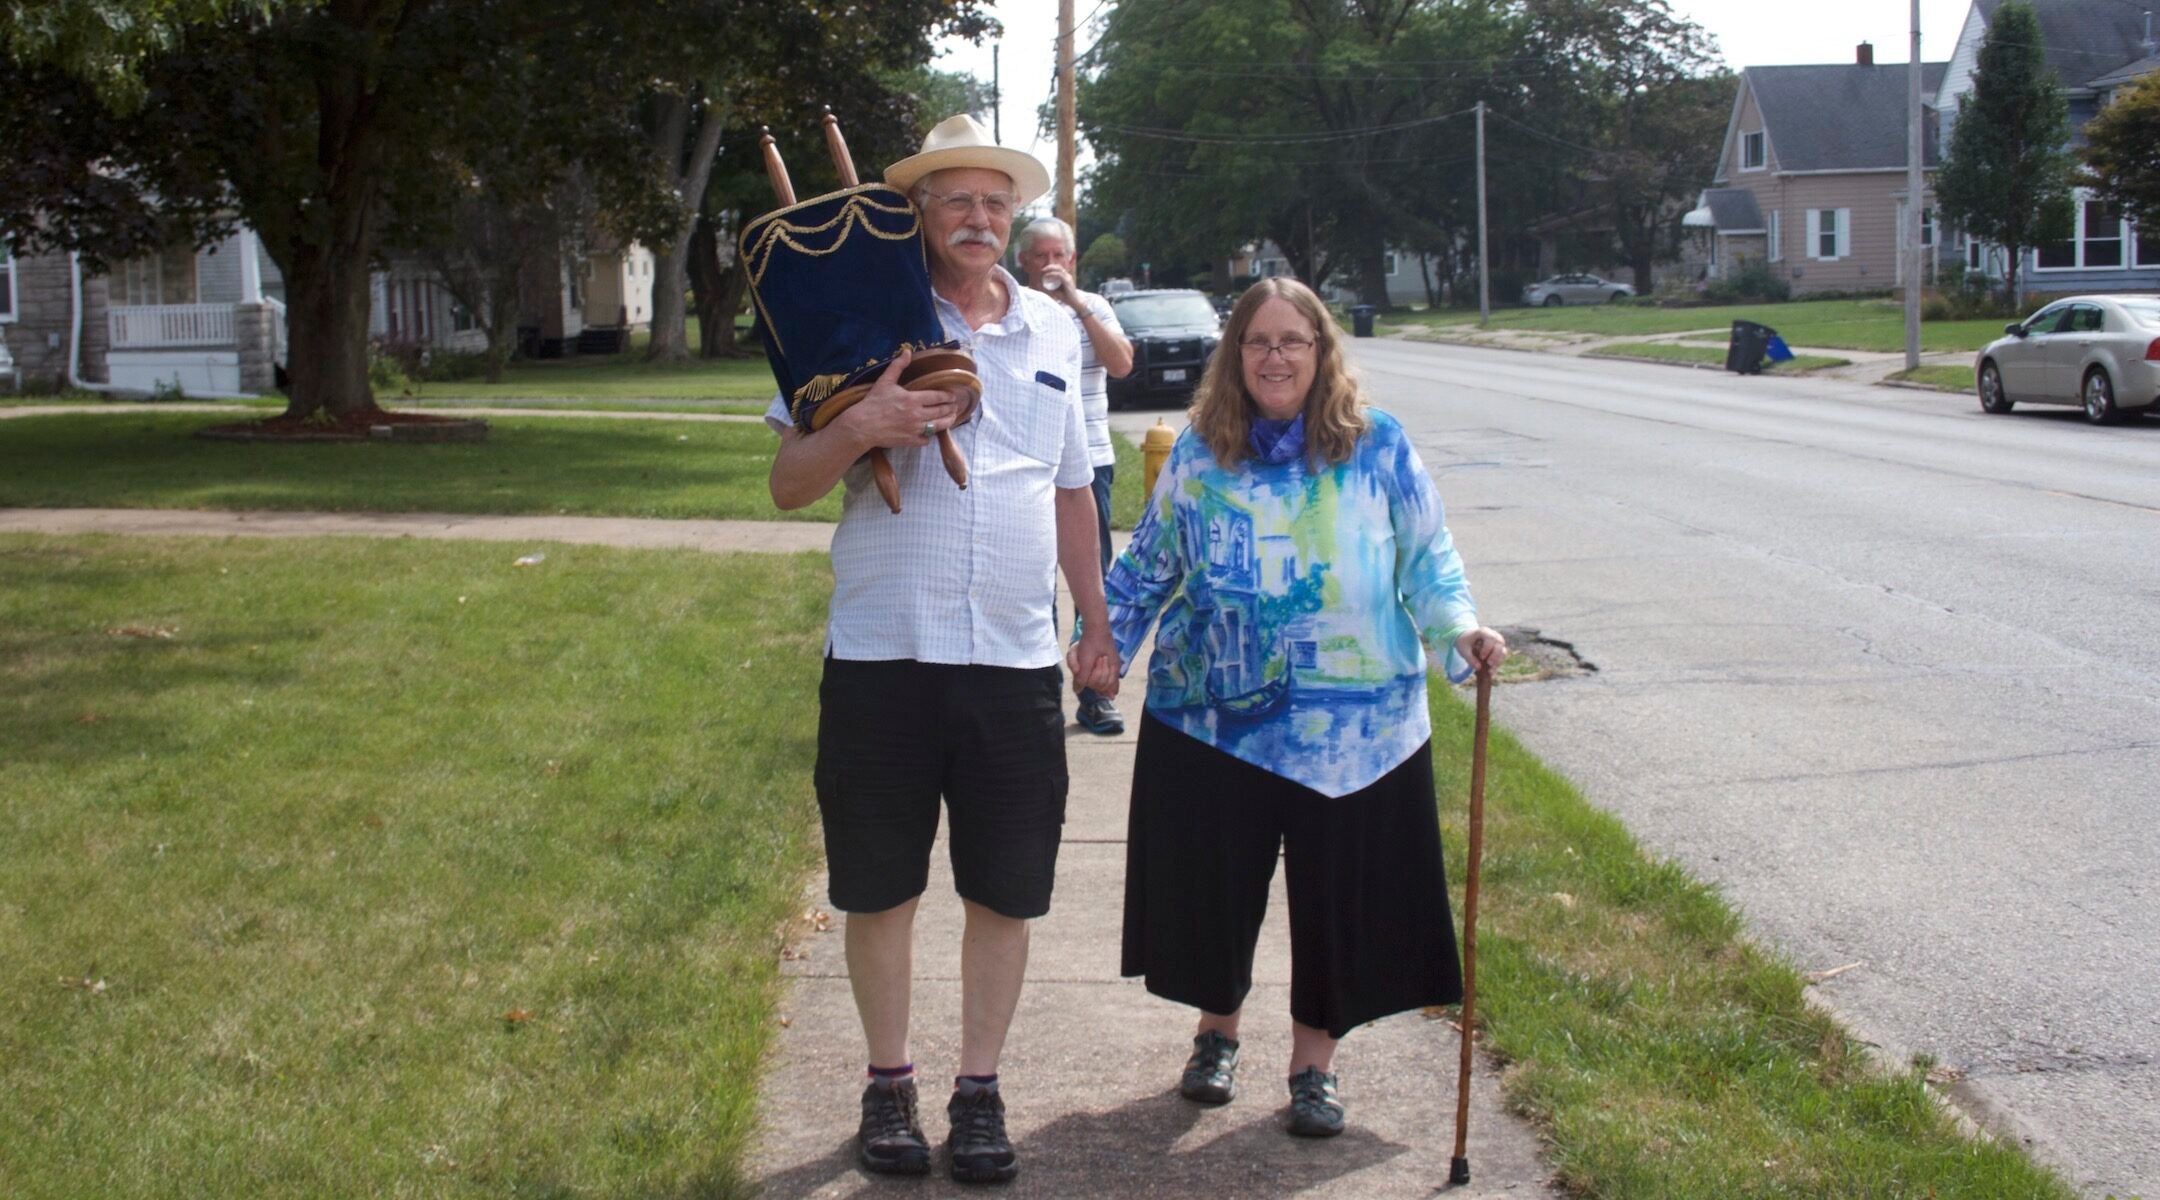 A rabbi and her husband carry a Torah